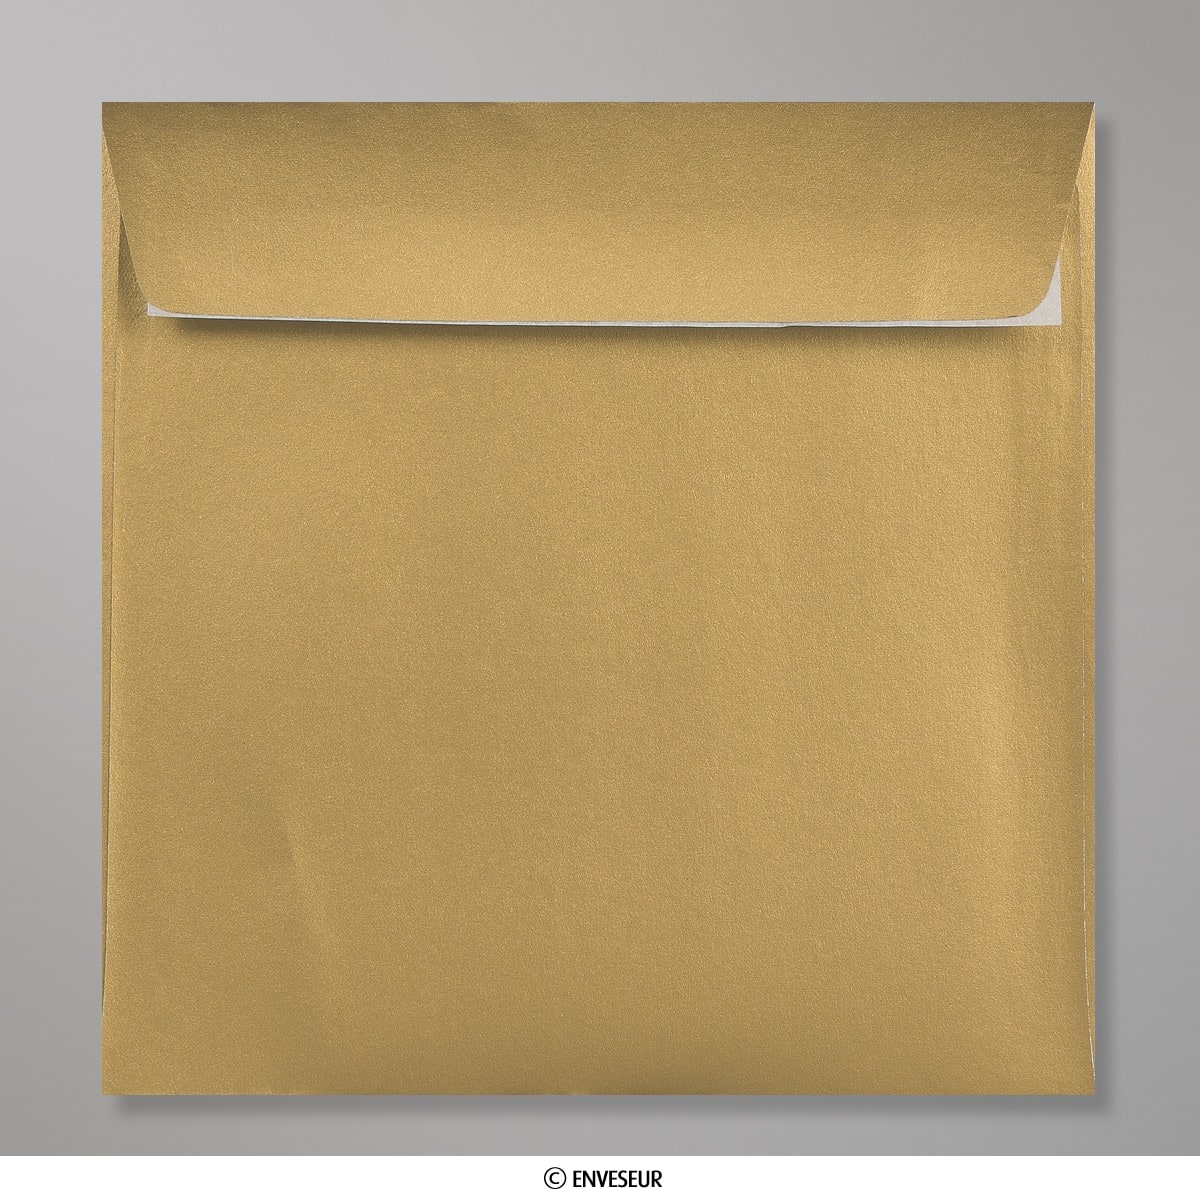 Lot de 50 enveloppe clariana noire 162x229 mm (c5) - La Poste